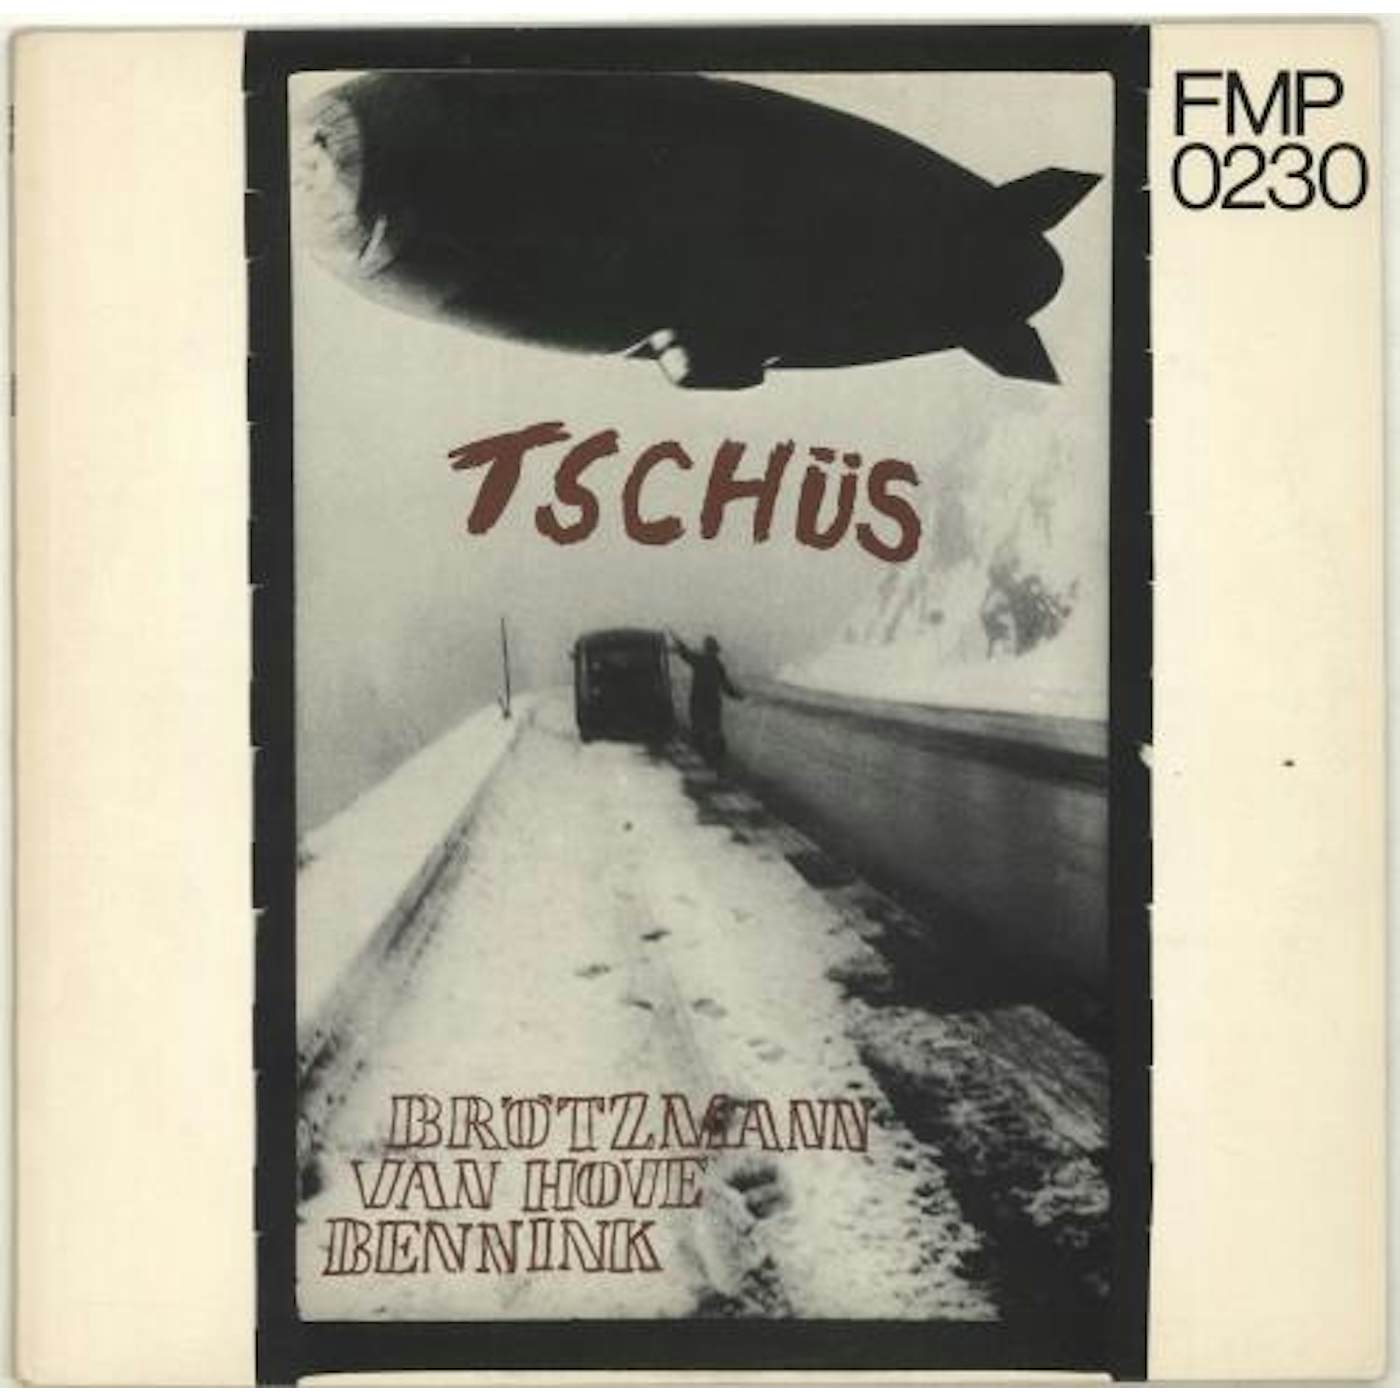 Brotzmann/Van Hove/Bennink TSCHUS Vinyl Record